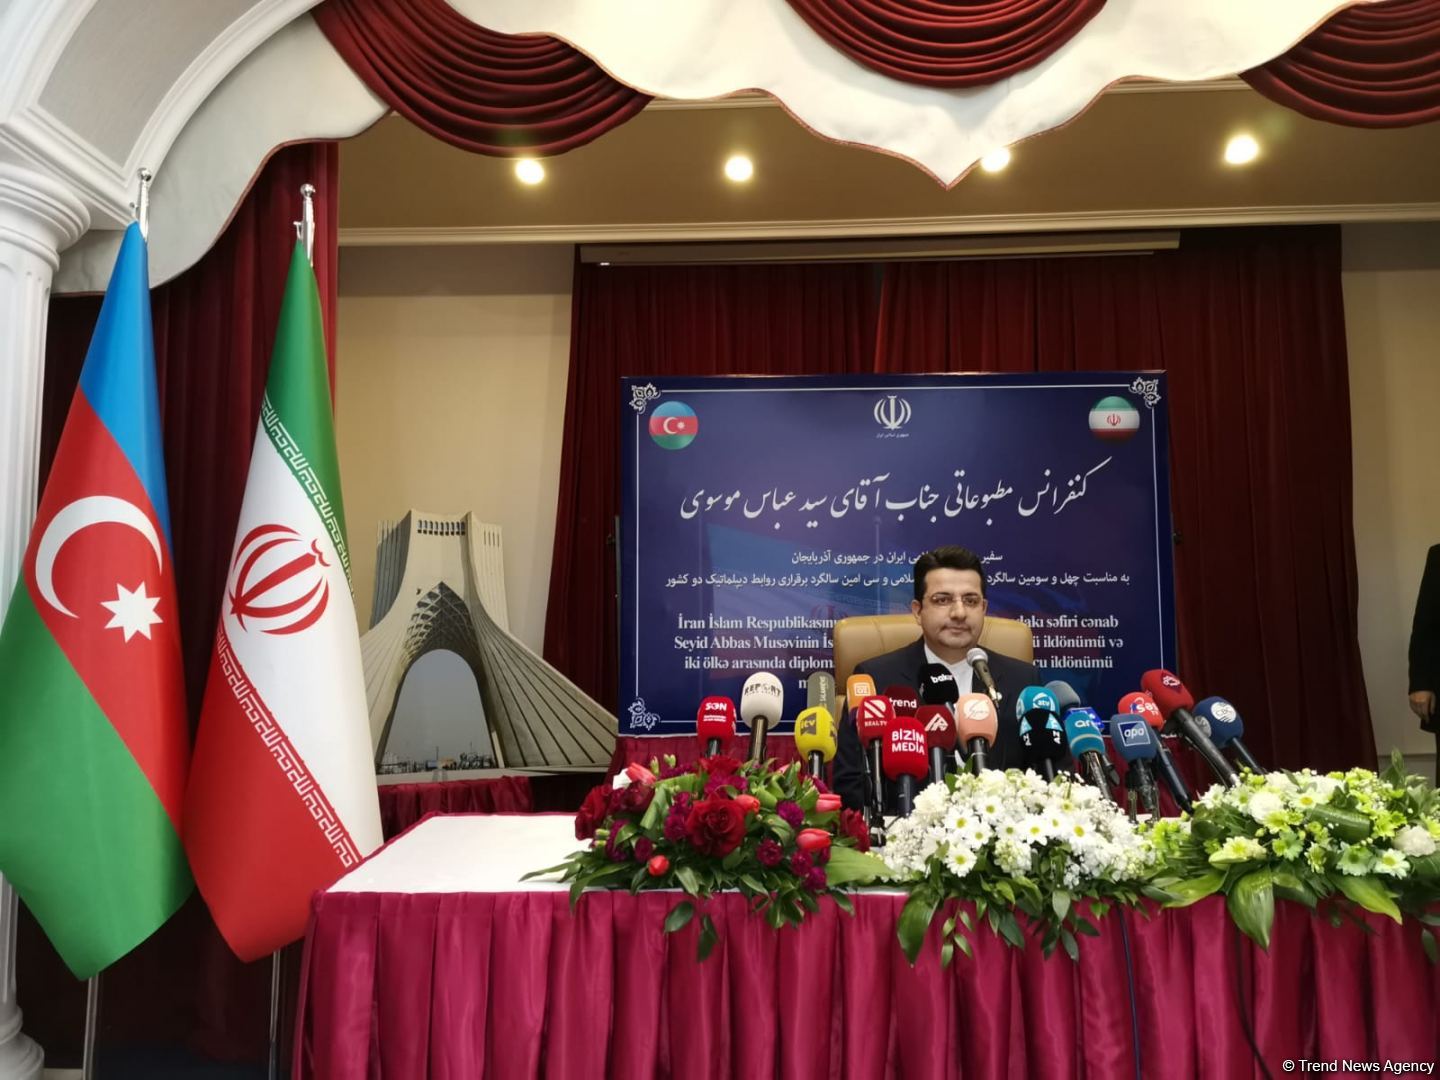 İran bölgədə bütün kommunikasiya xətlərini bərpa olunmasını dəstəkləyir - İran səfiri